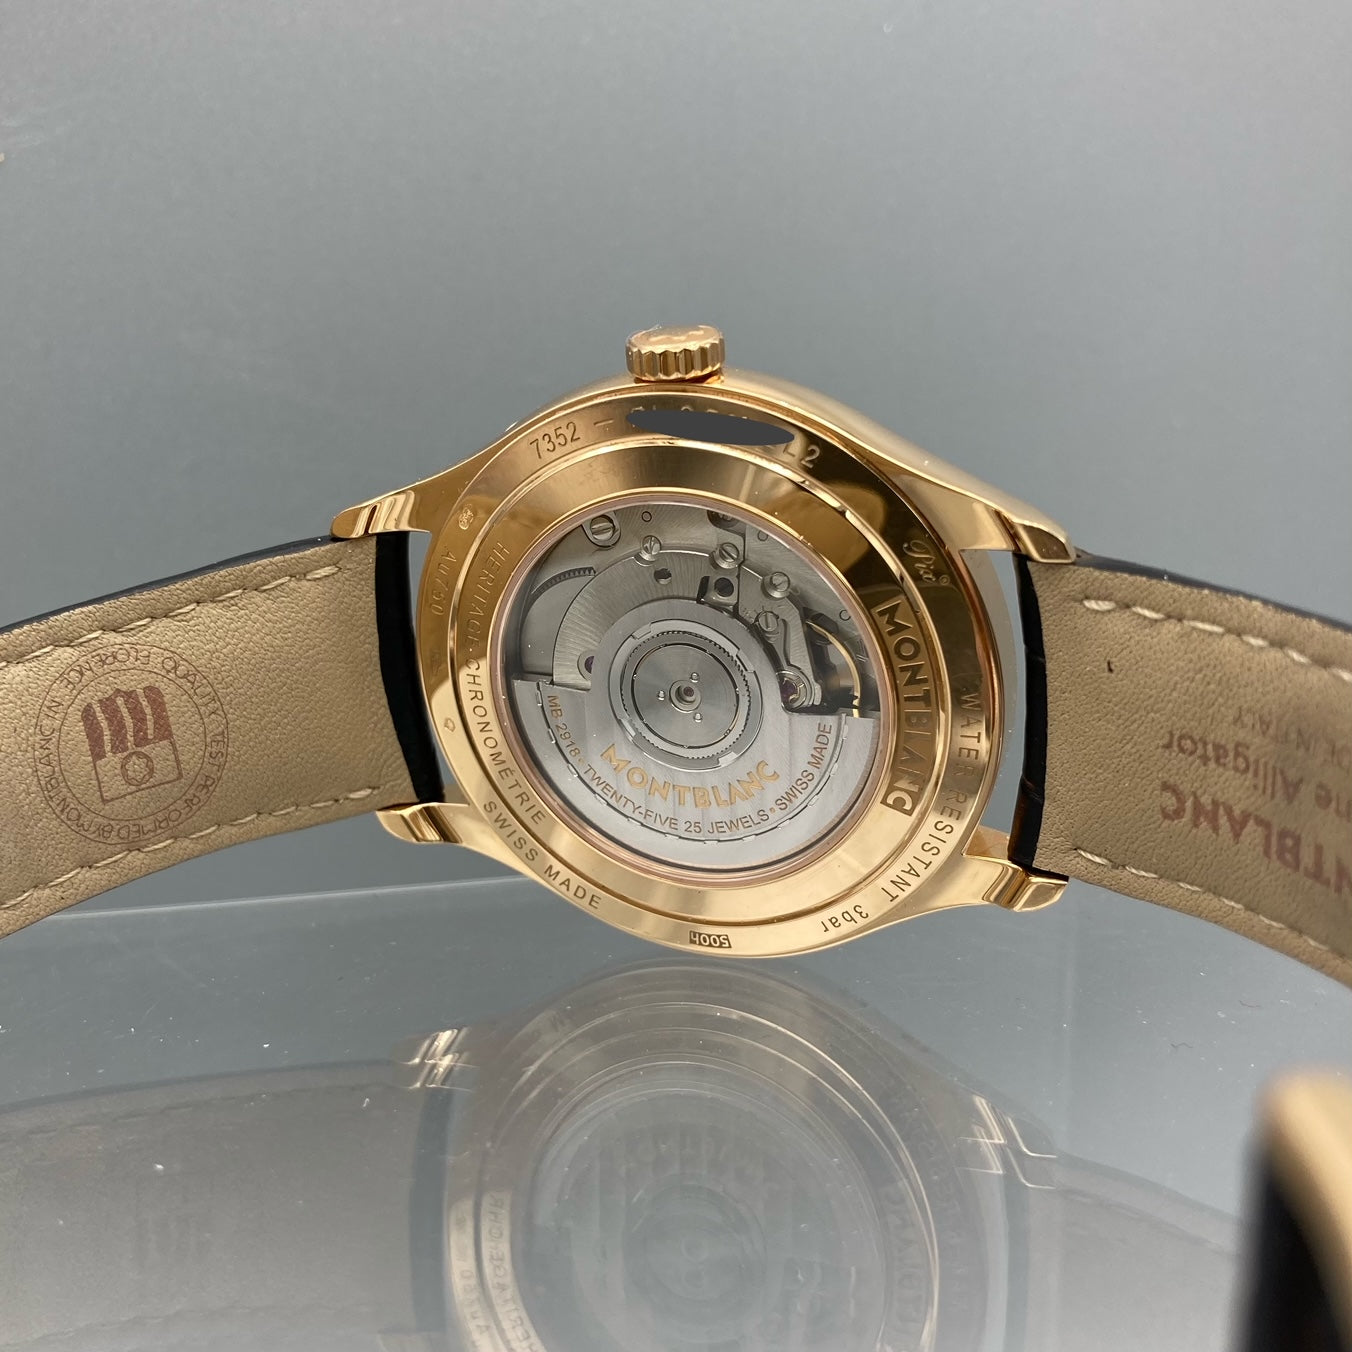 Montblanc Heritage Chronometrie Quantieme Annuel Automatic Men's Watch - 112535